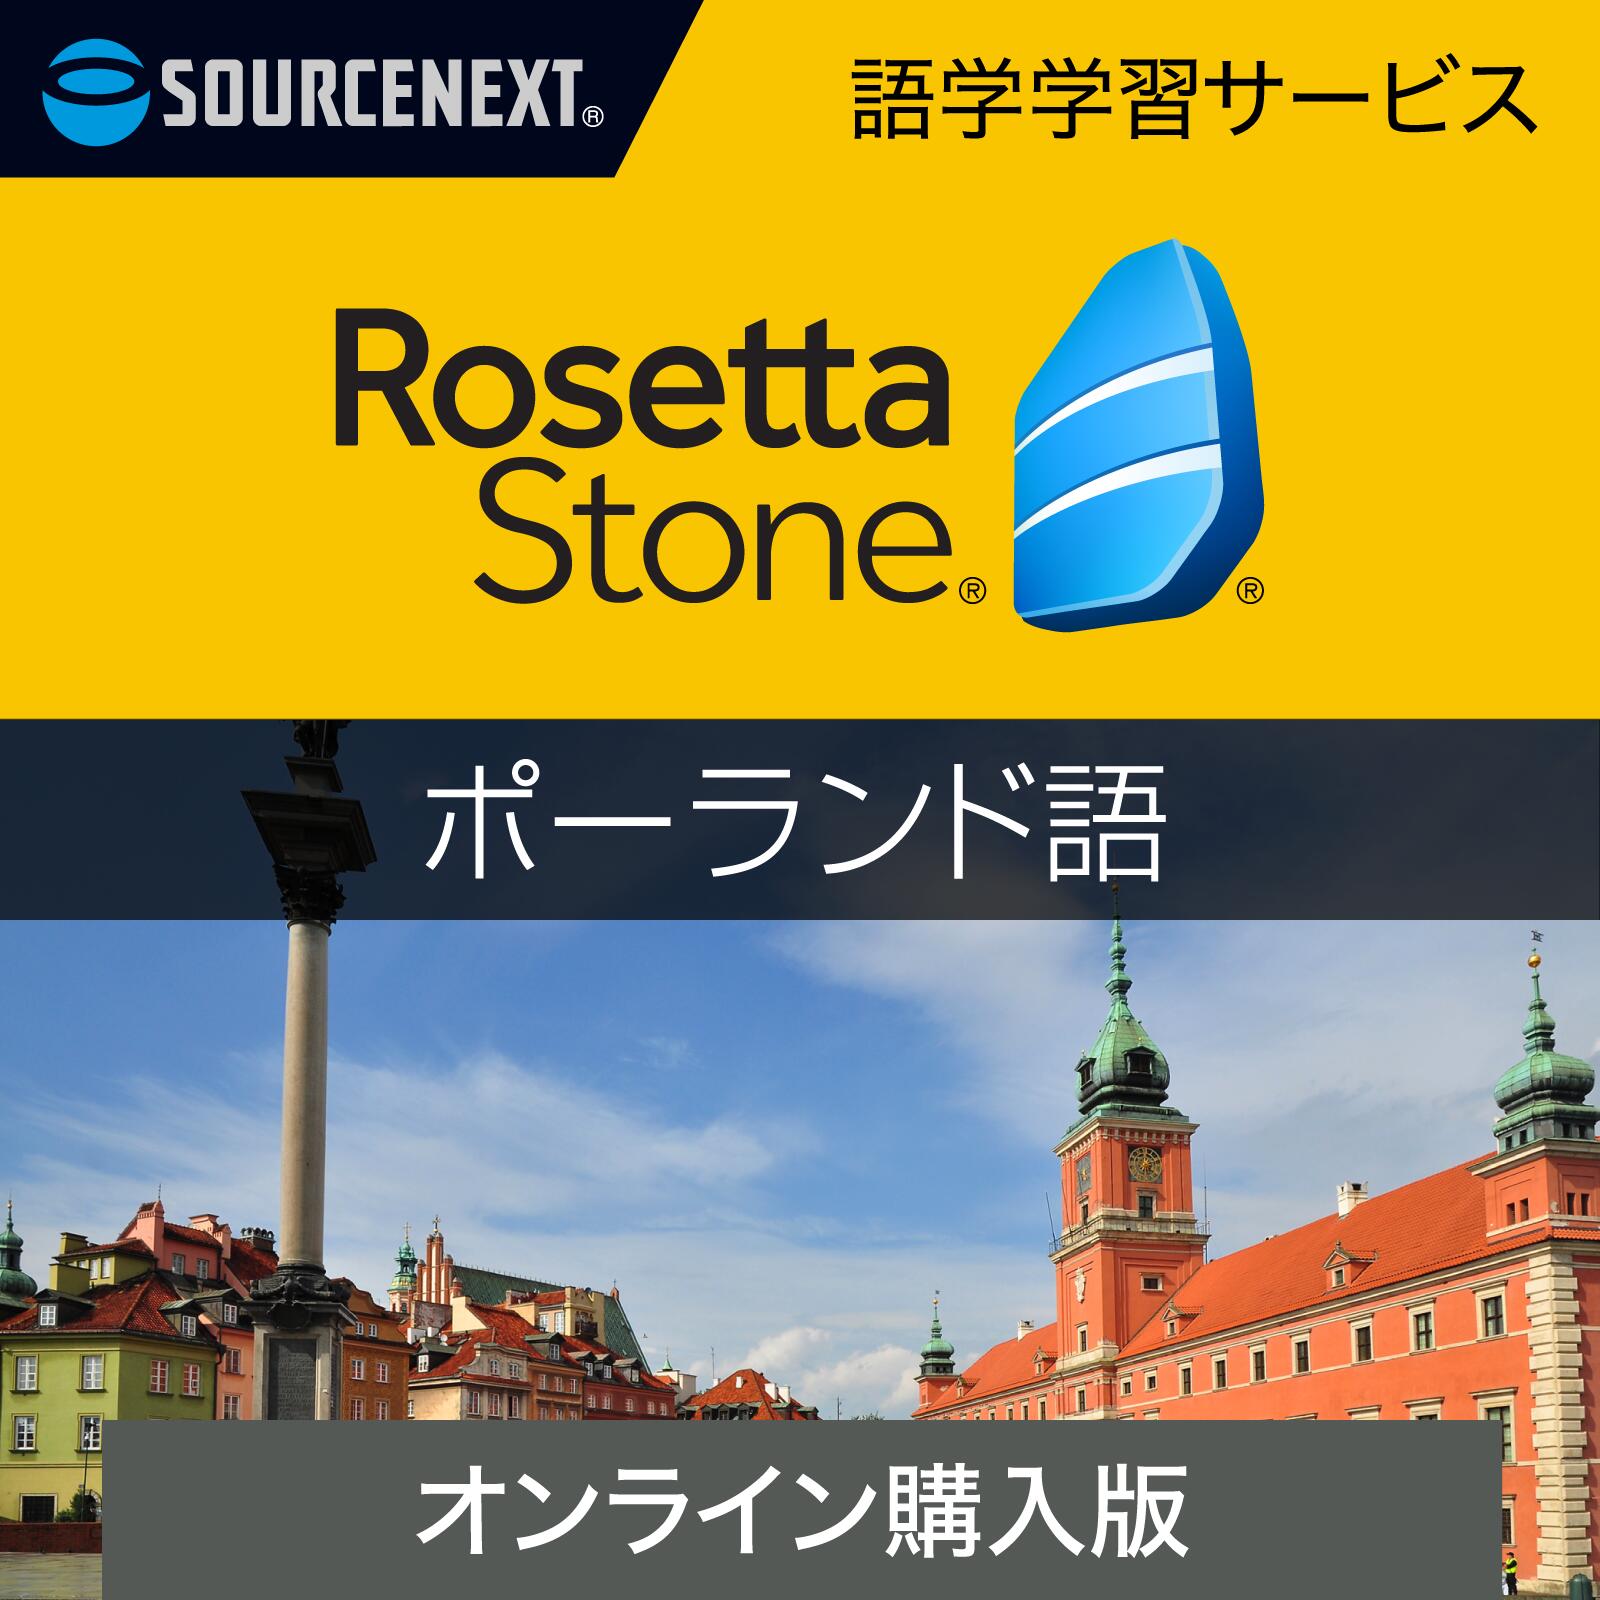 ソースネクスト|ロゼッタストーン ポーランド語【ダウンロード版】DL_SNR|語学学習ソフト|Win/Mac/Android/iOS対応|オンラインコード版